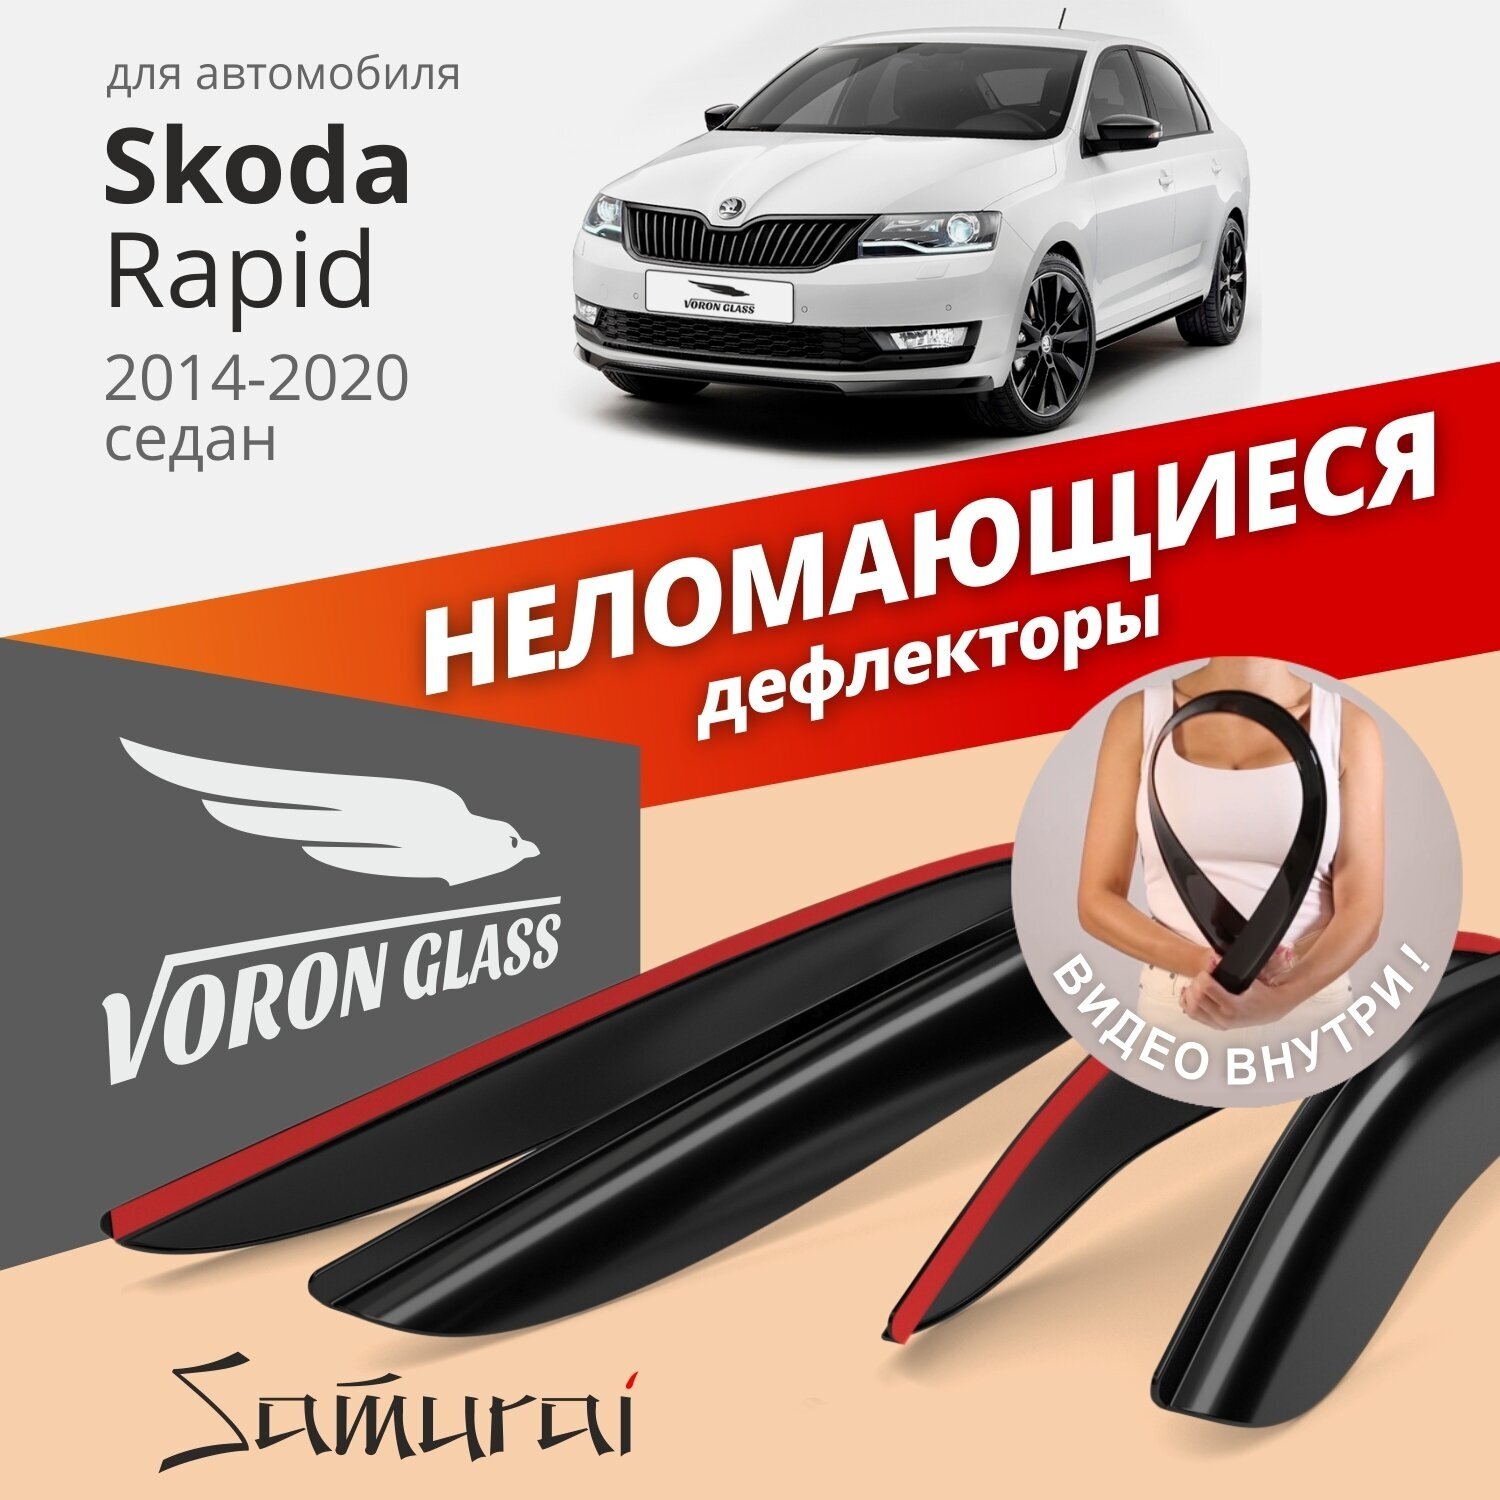 Дефлекторы окон неломающиеся Voron Glass серия Samurai для Skoda Rapid 2014-2020 седан накладные 4 шт. - фотография № 1